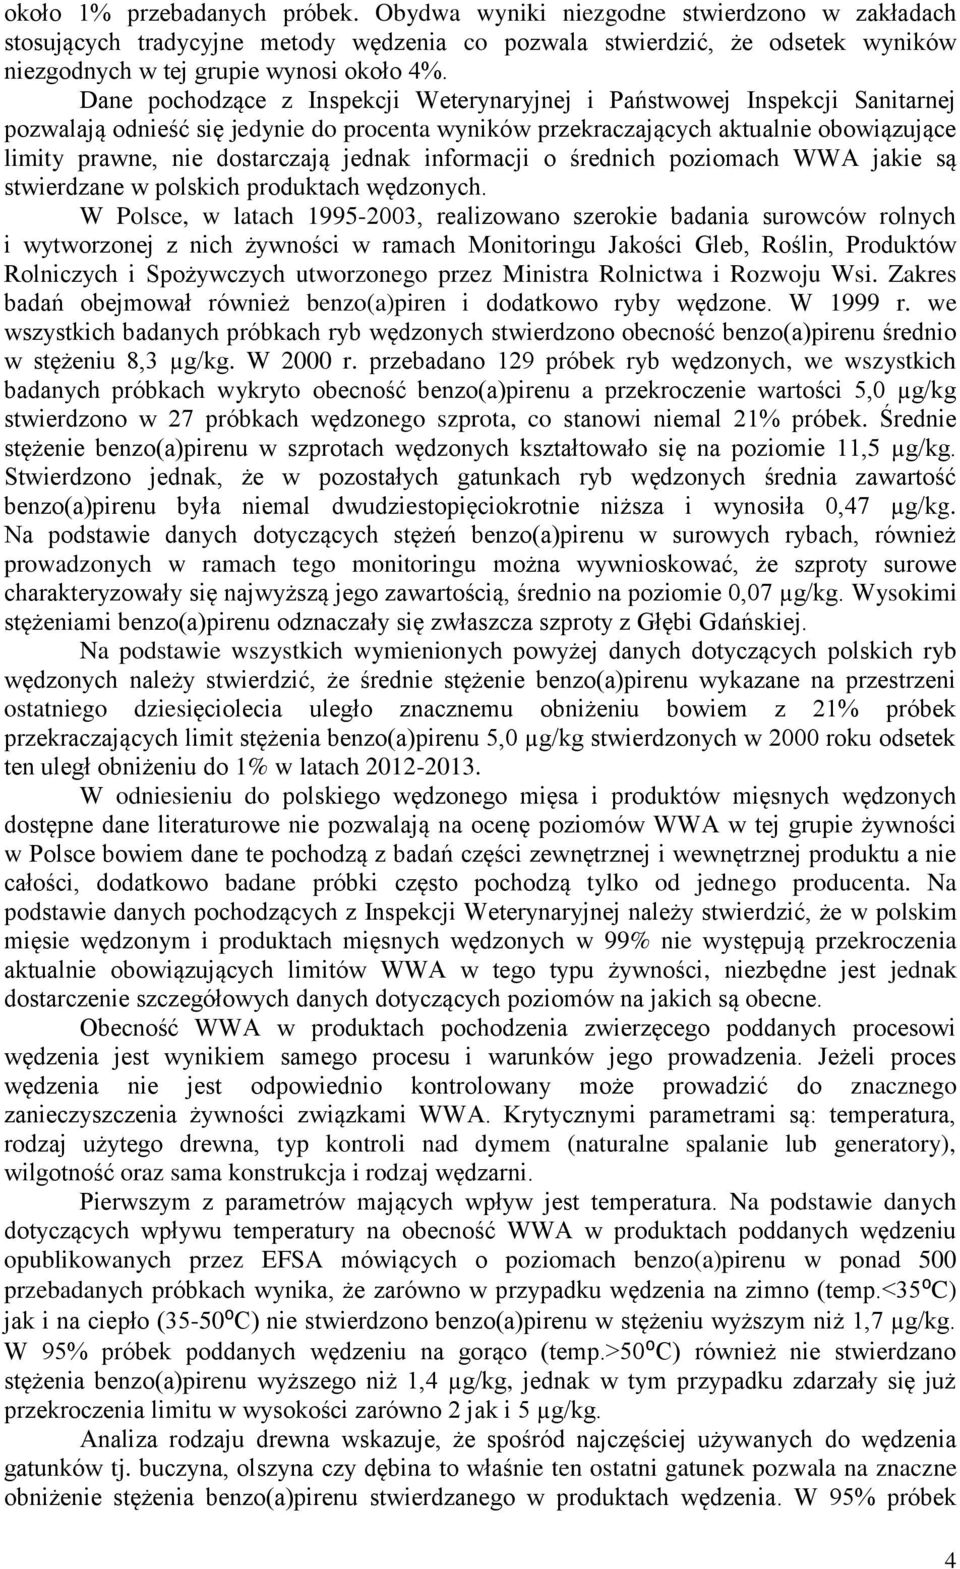 jednak informacji o średnich poziomach WWA jakie są stwierdzane w polskich produktach wędzonych.